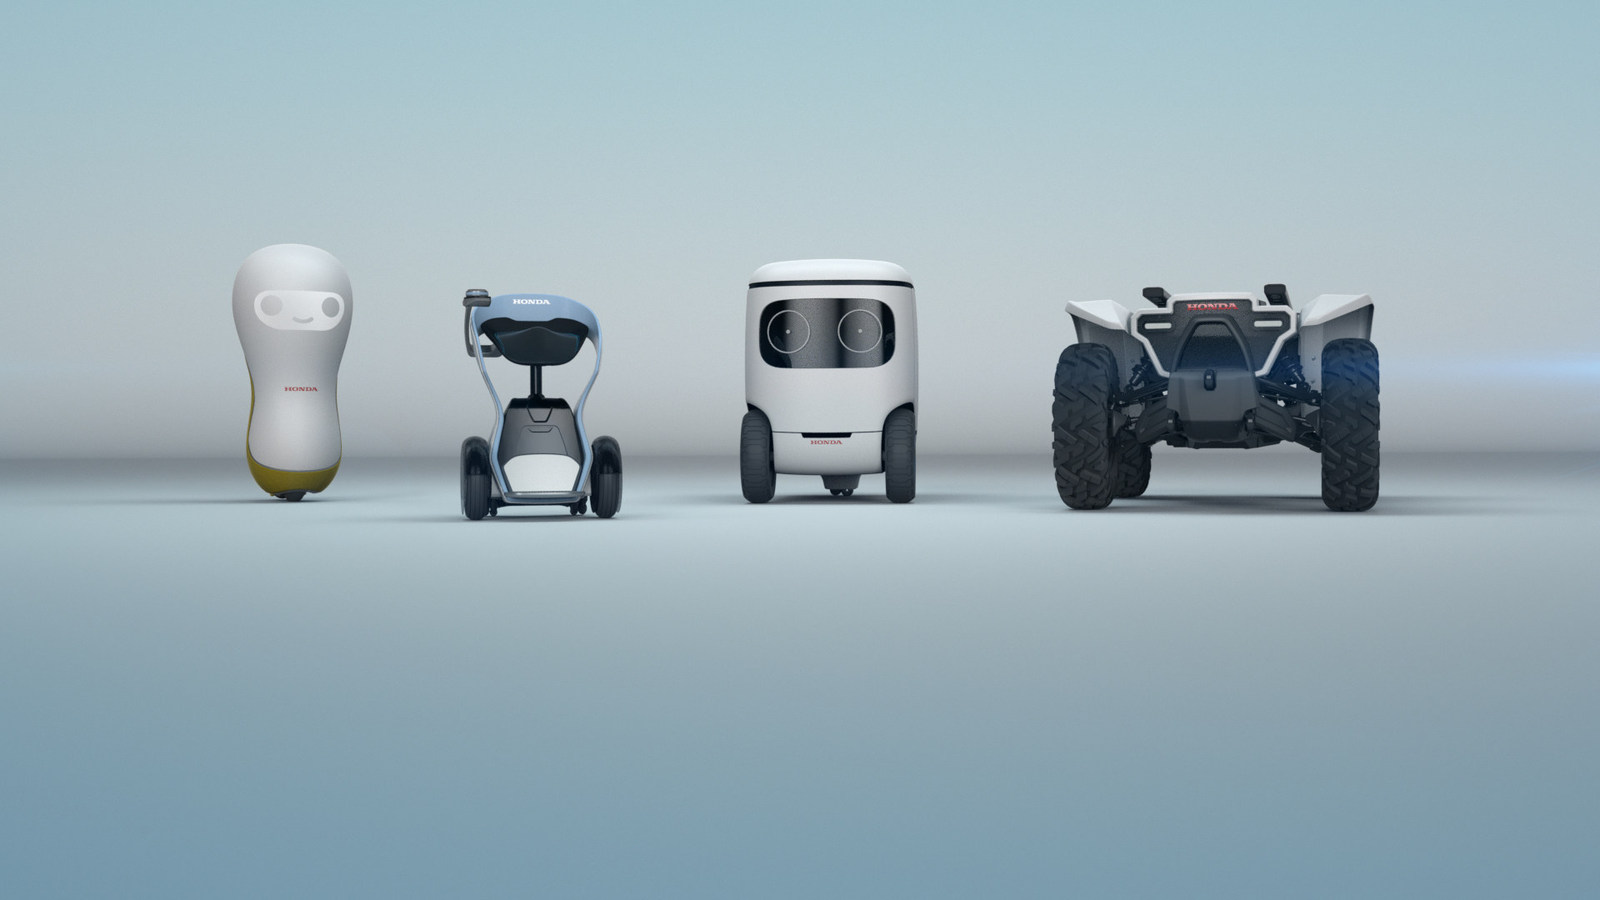 Honda - Robots